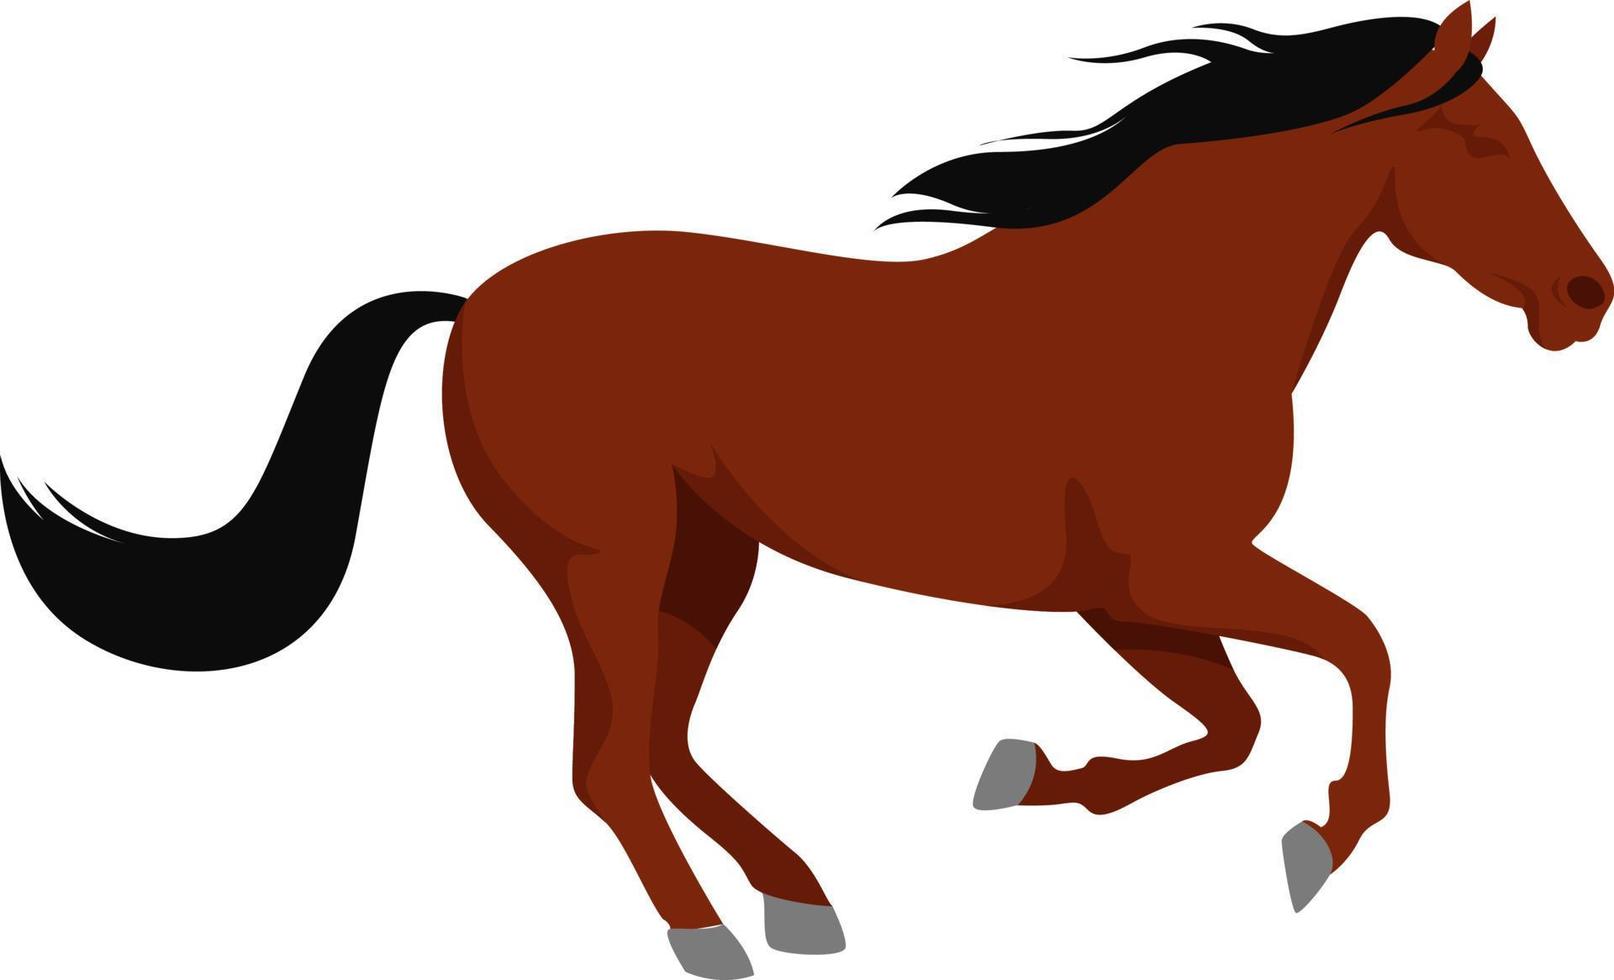 Horse running, illustration, vector on white background